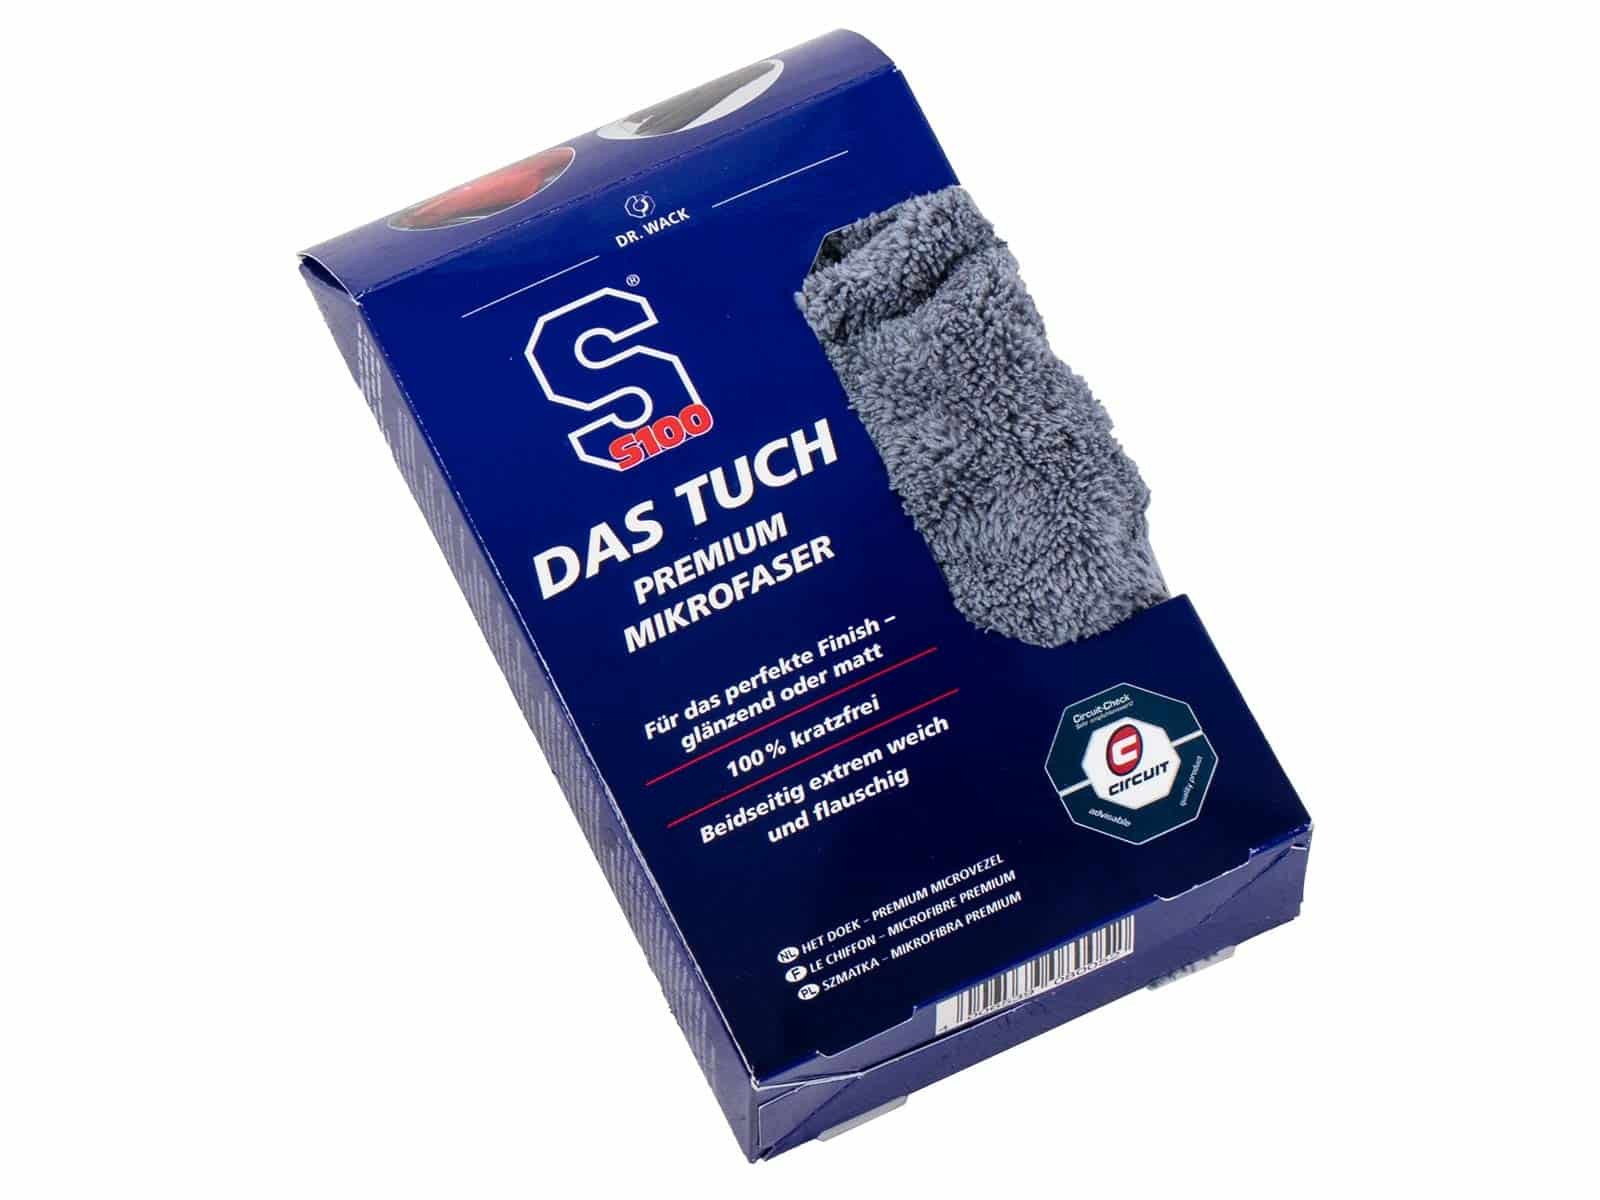 S100 DAS Tuch - Premium microfiber cloth by Dr. Wack